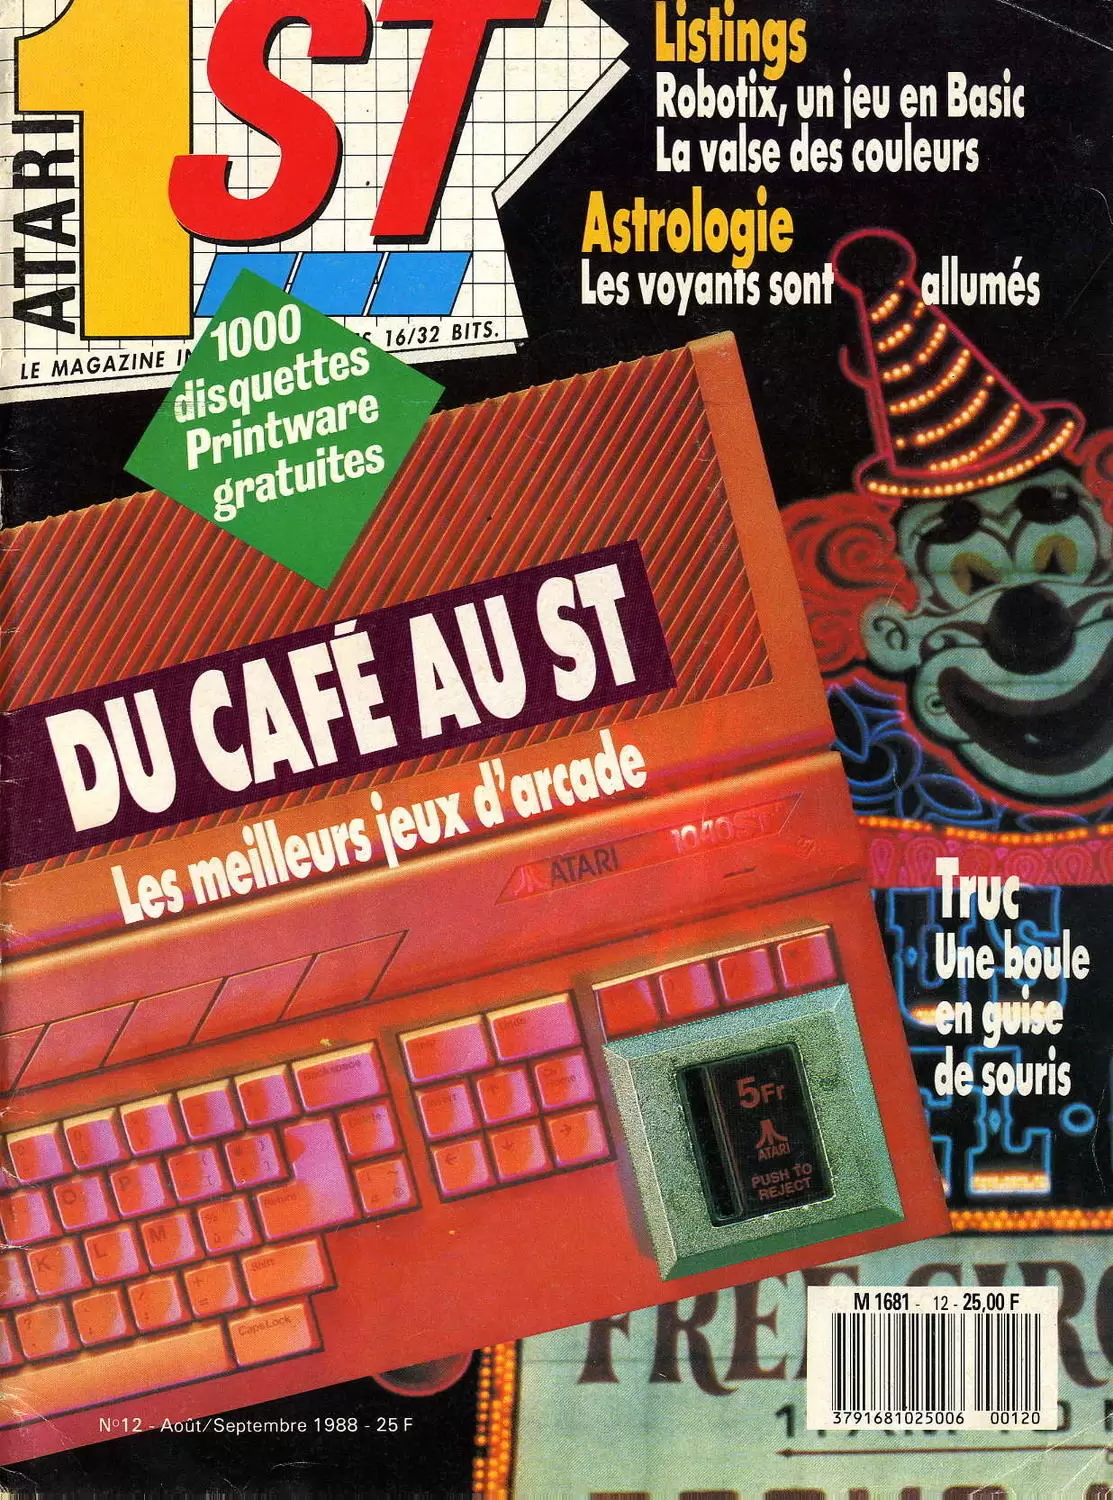 Atari 1ST - Atari 1ST n°12